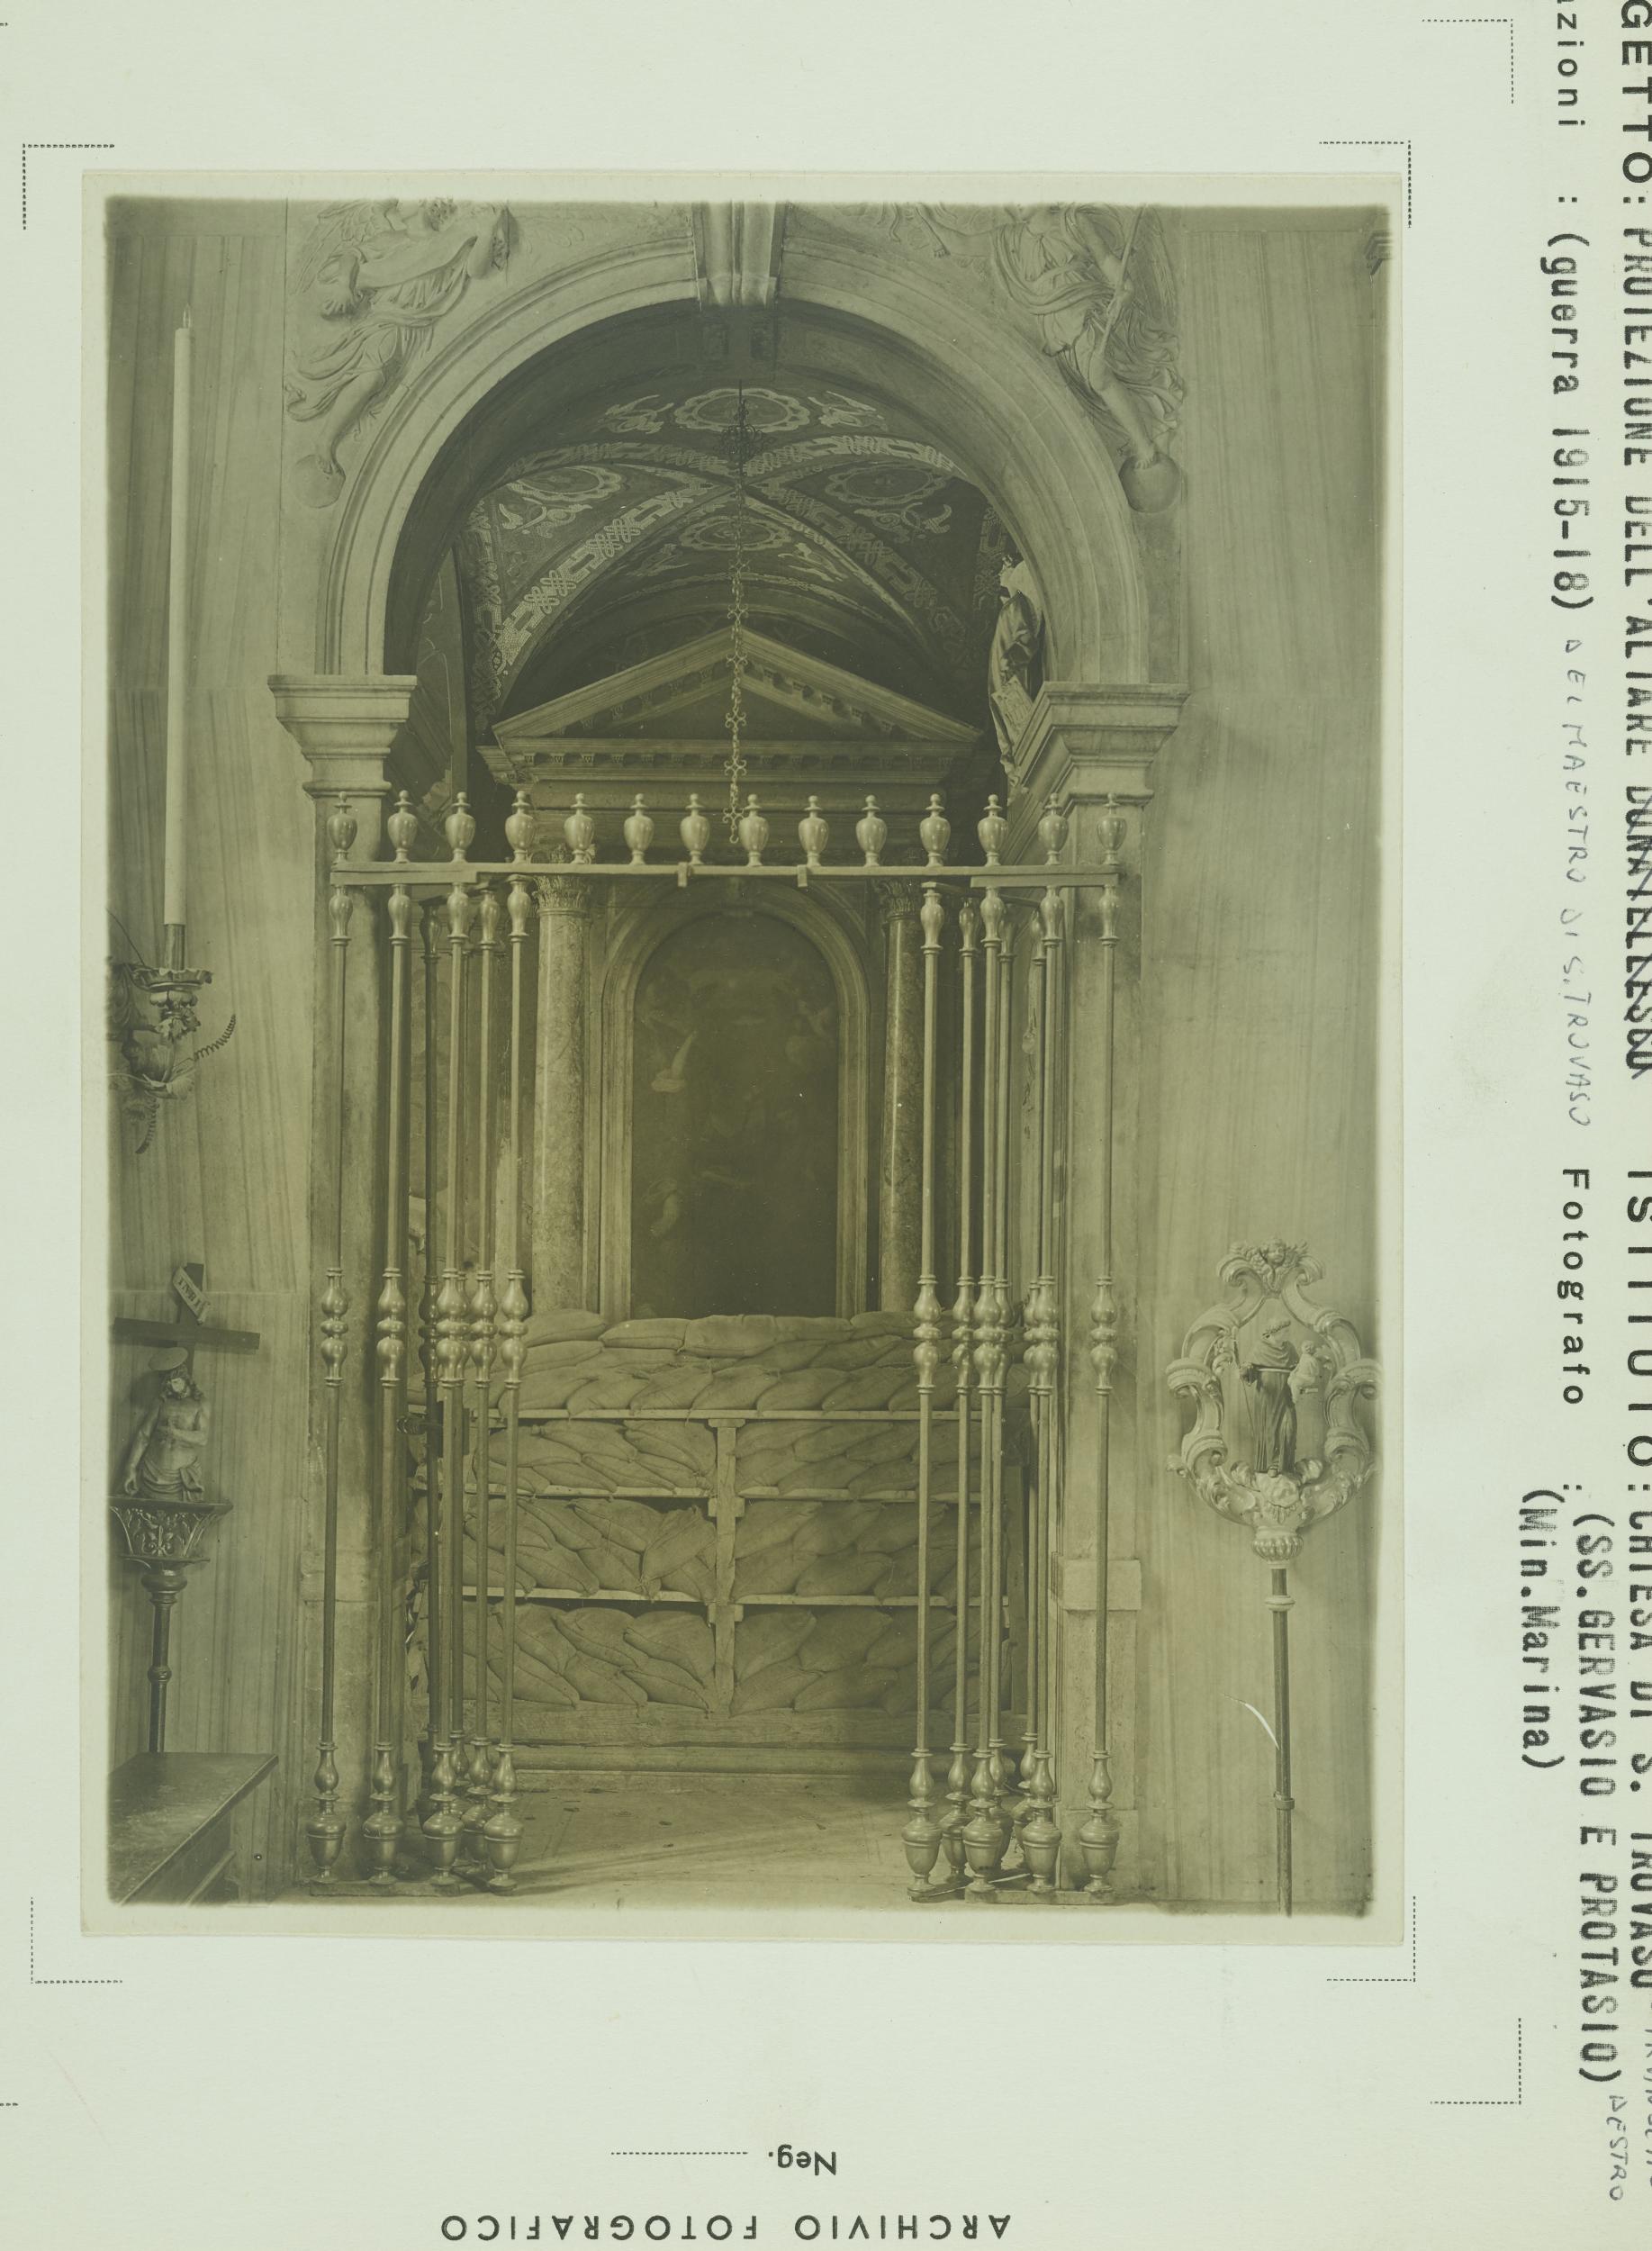 Fotografo non identificato, Venezia - Chiesa di S. Trovaso, interno, cappella, protezione aerea, gelatina ai sali d'argento, MPI148938